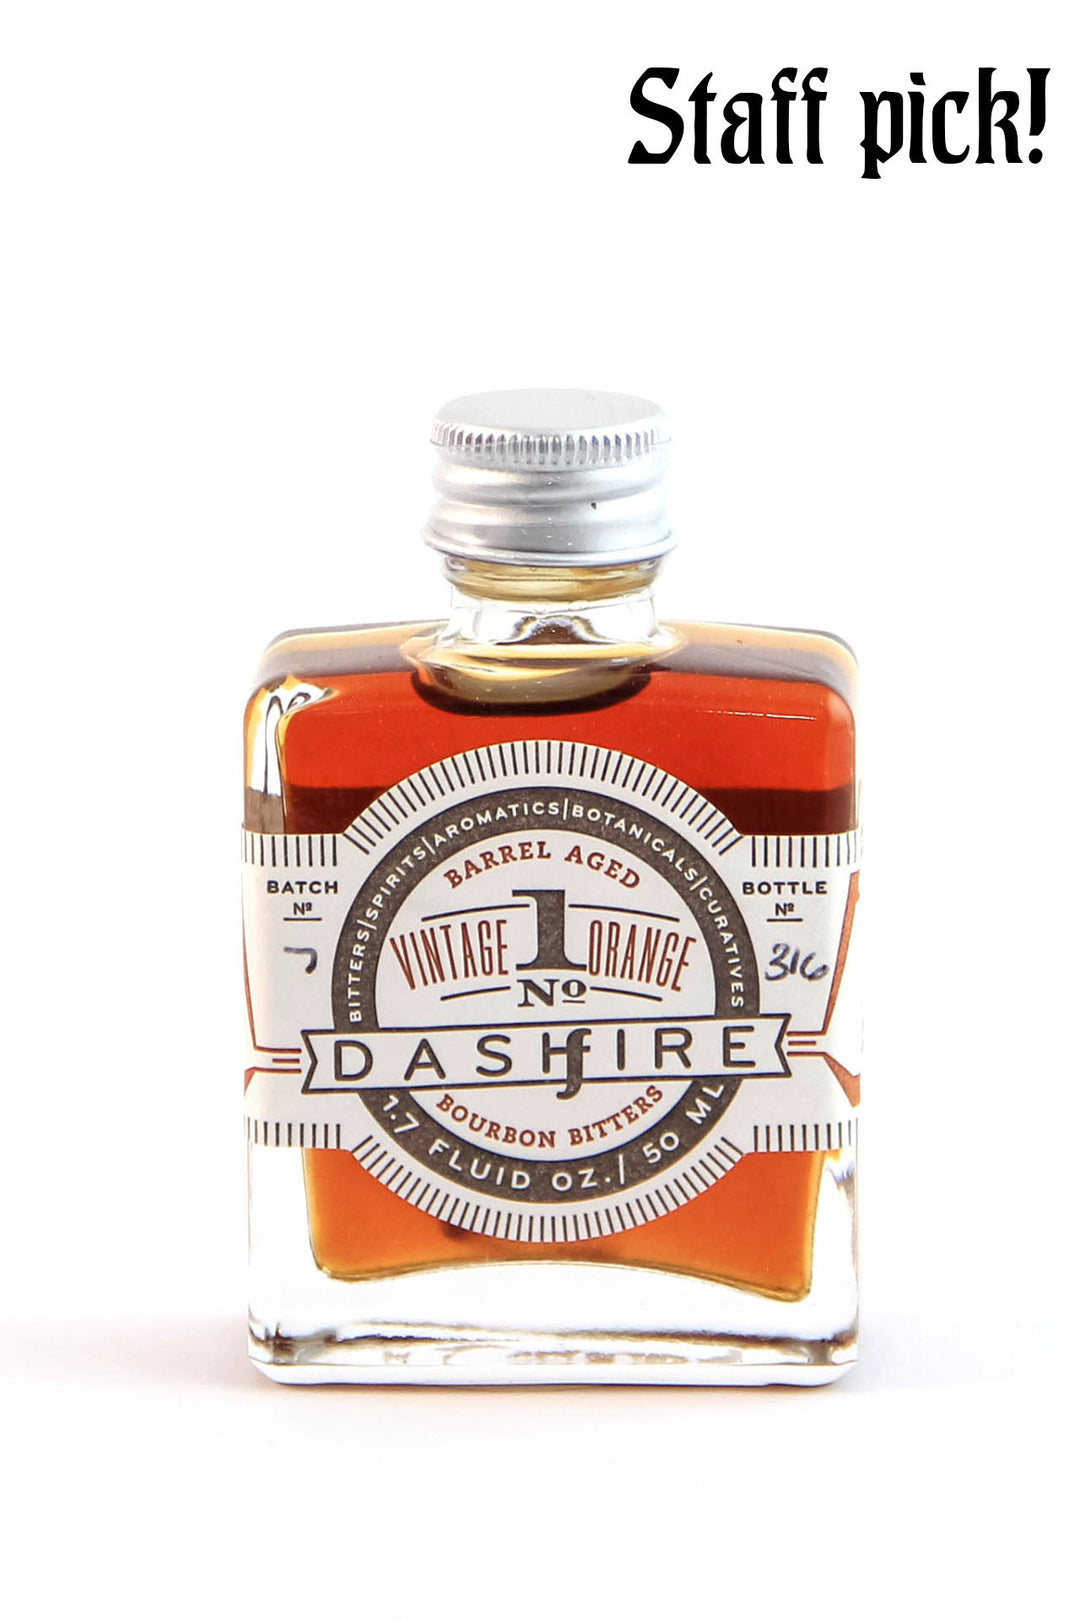 Dashfire Vintage Orange No. 1 Bitters